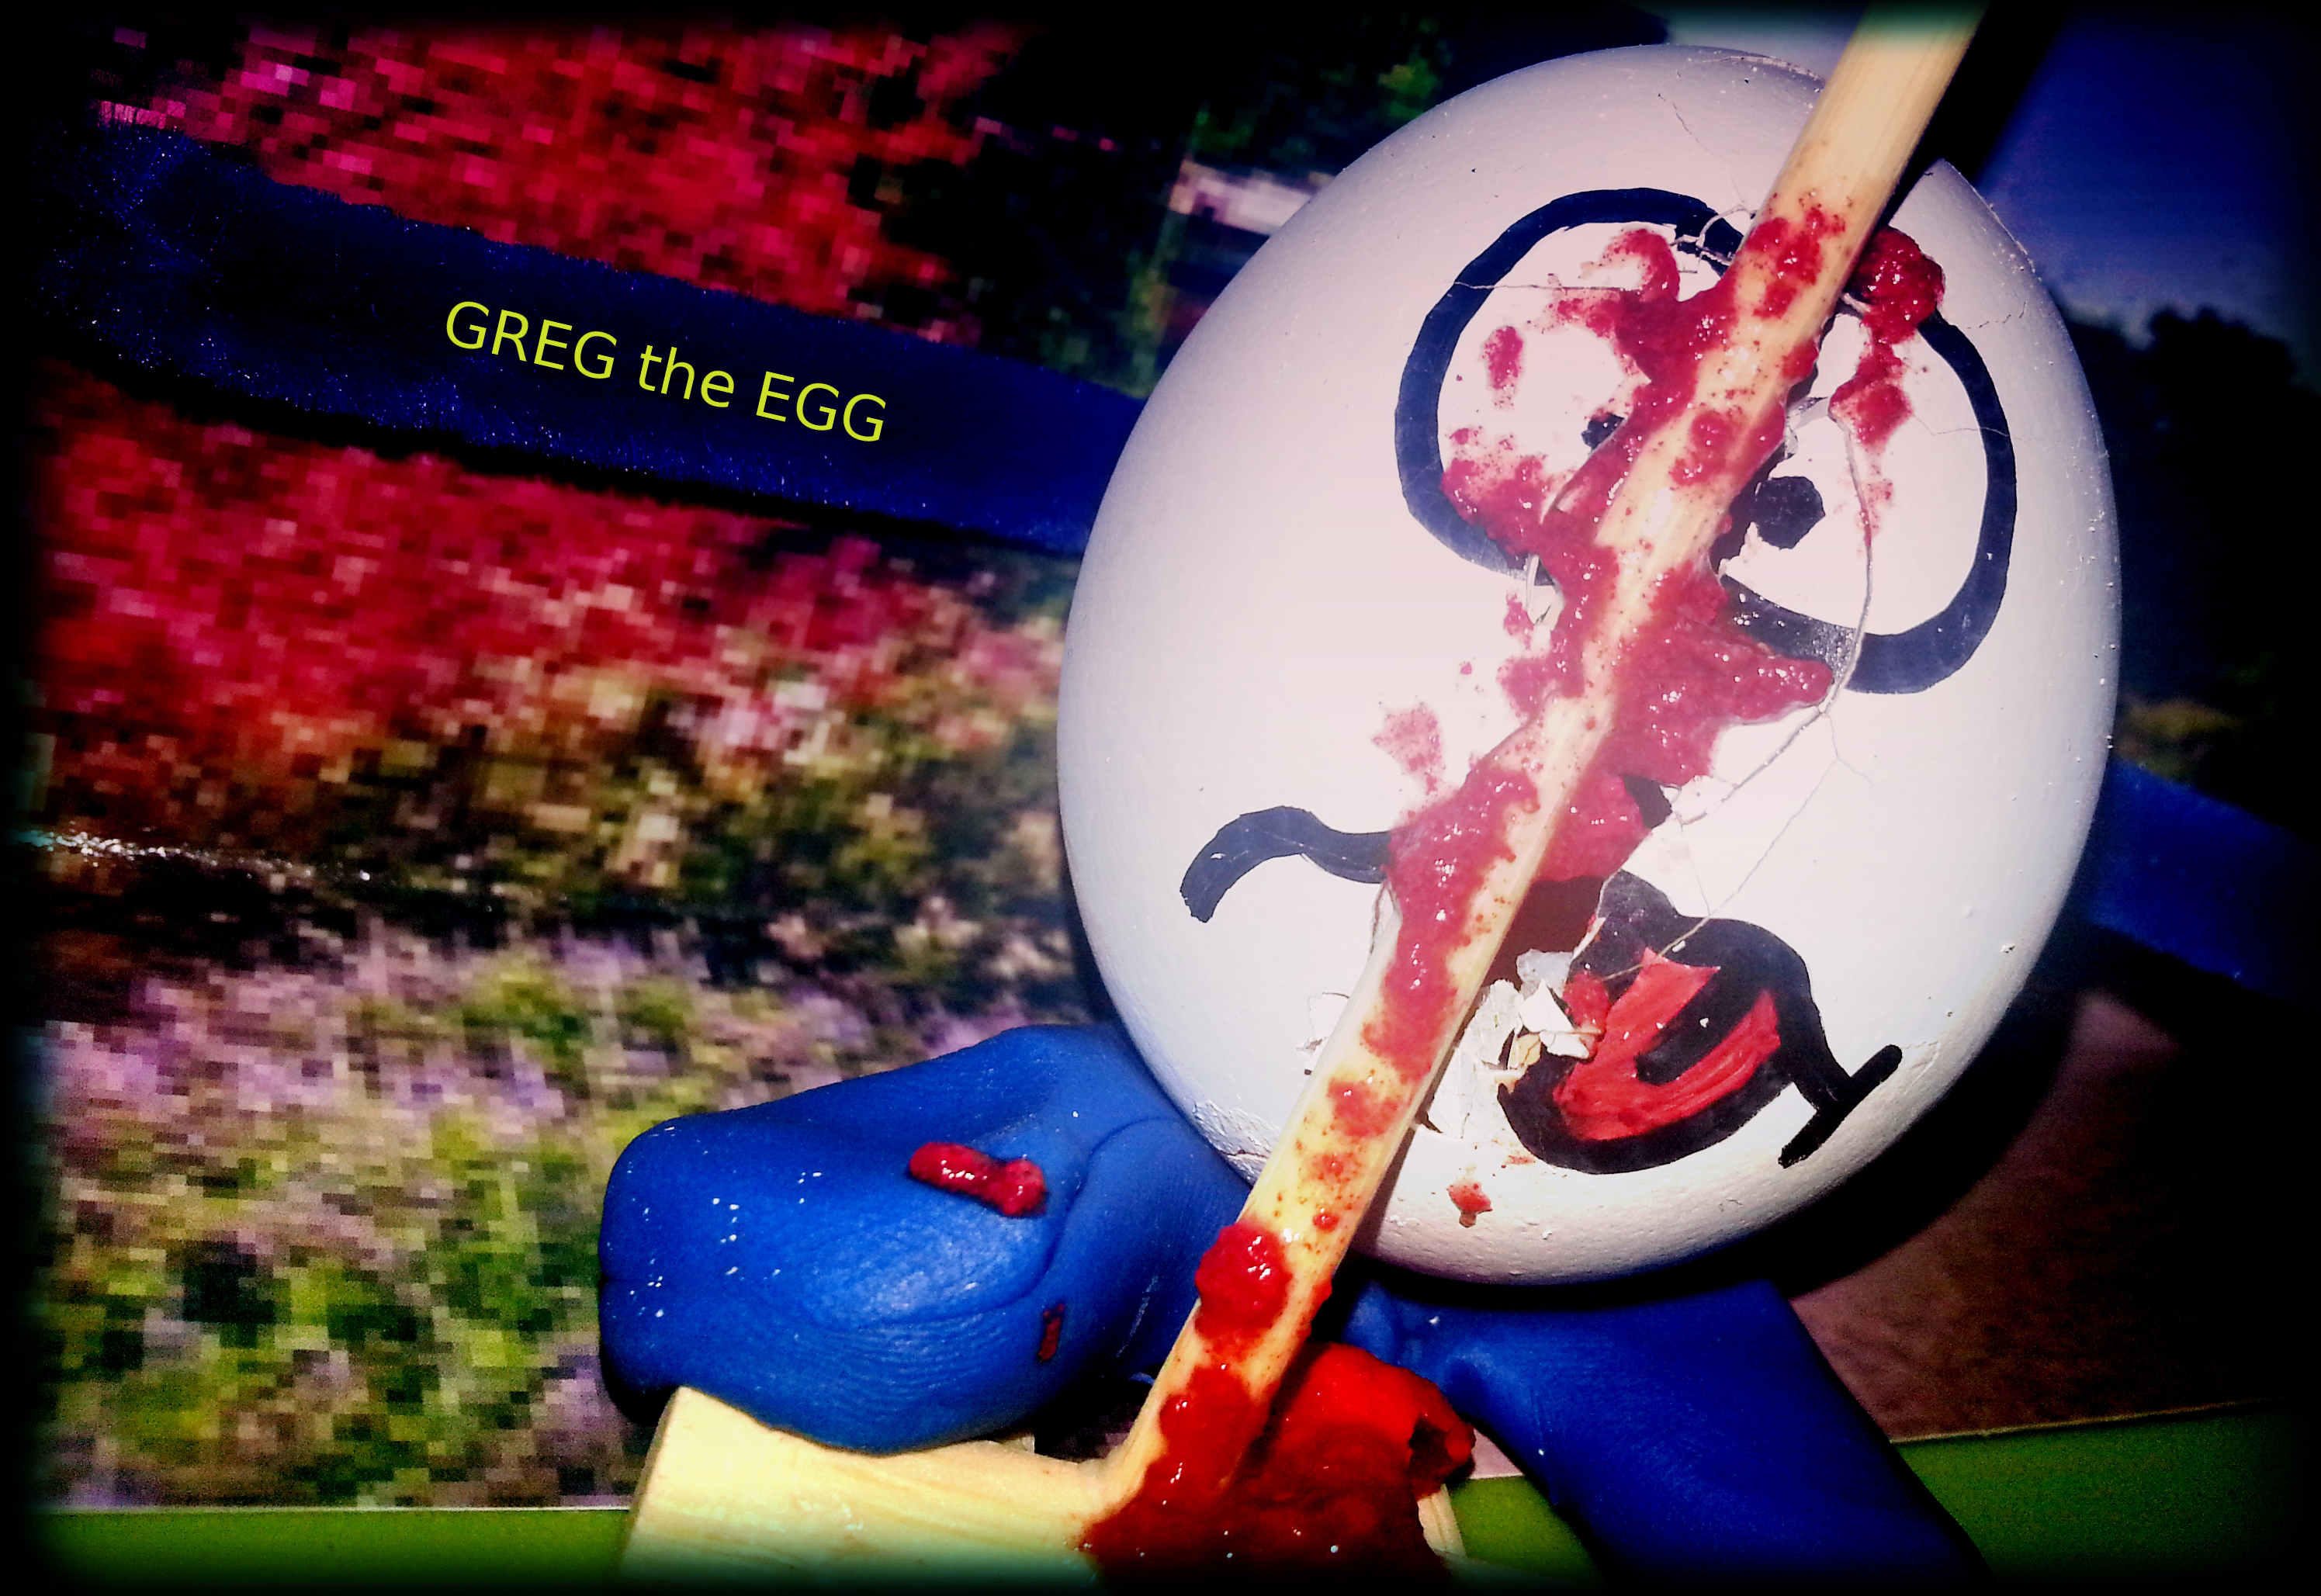 Greg the stuntman and unlucky fellowToday gardening